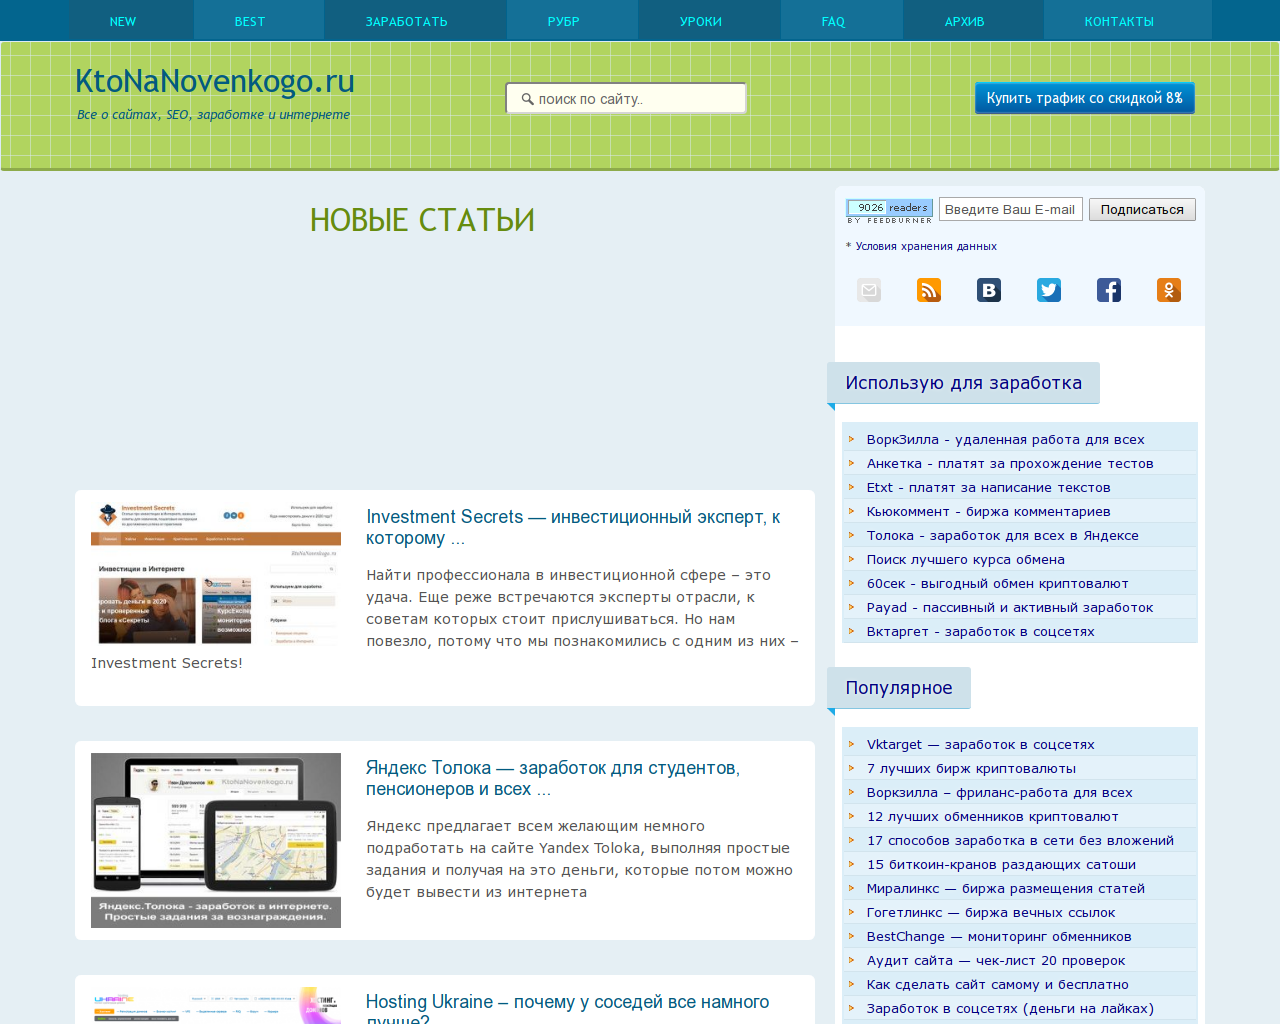 Изображение сайта ktonanovenkogo.ru в разрешении 1280x1024